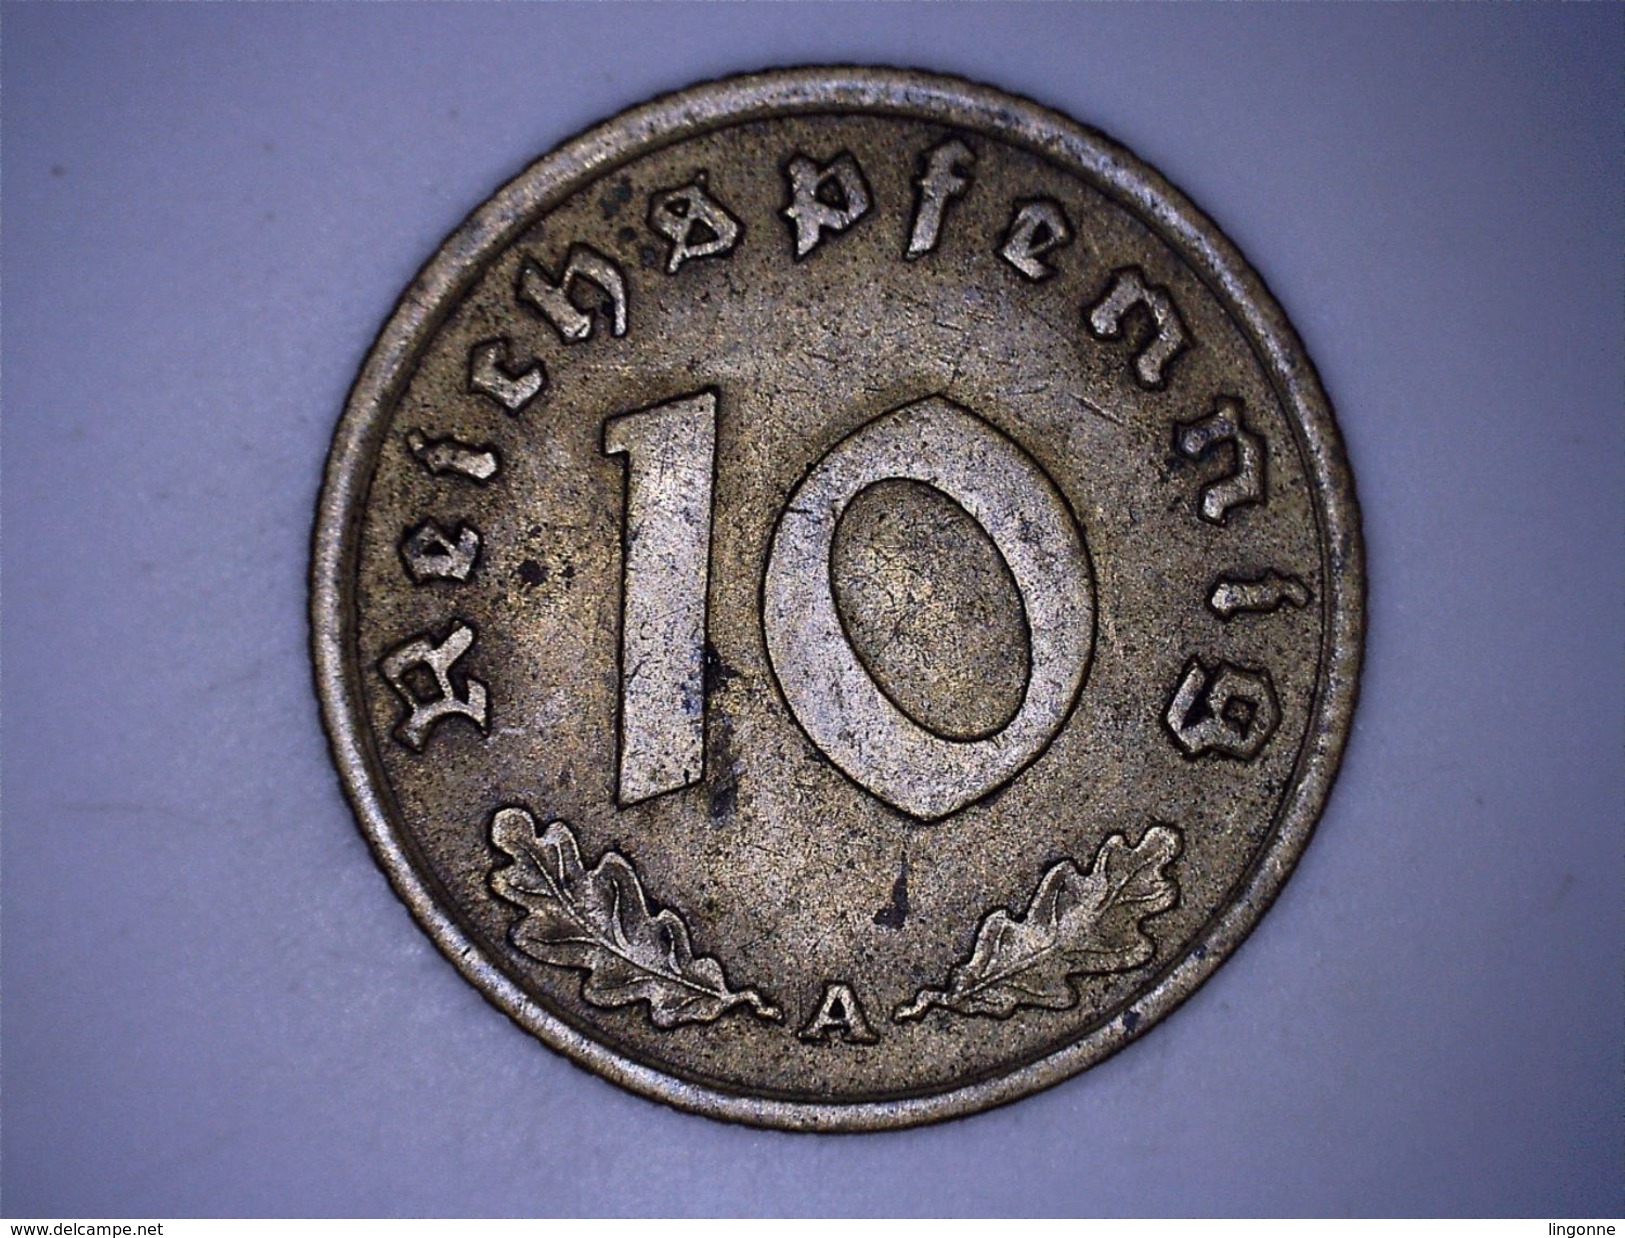 Allemagne - IIIe Reich - 10 Reichspfennig 1939 A - 10 Reichspfennig